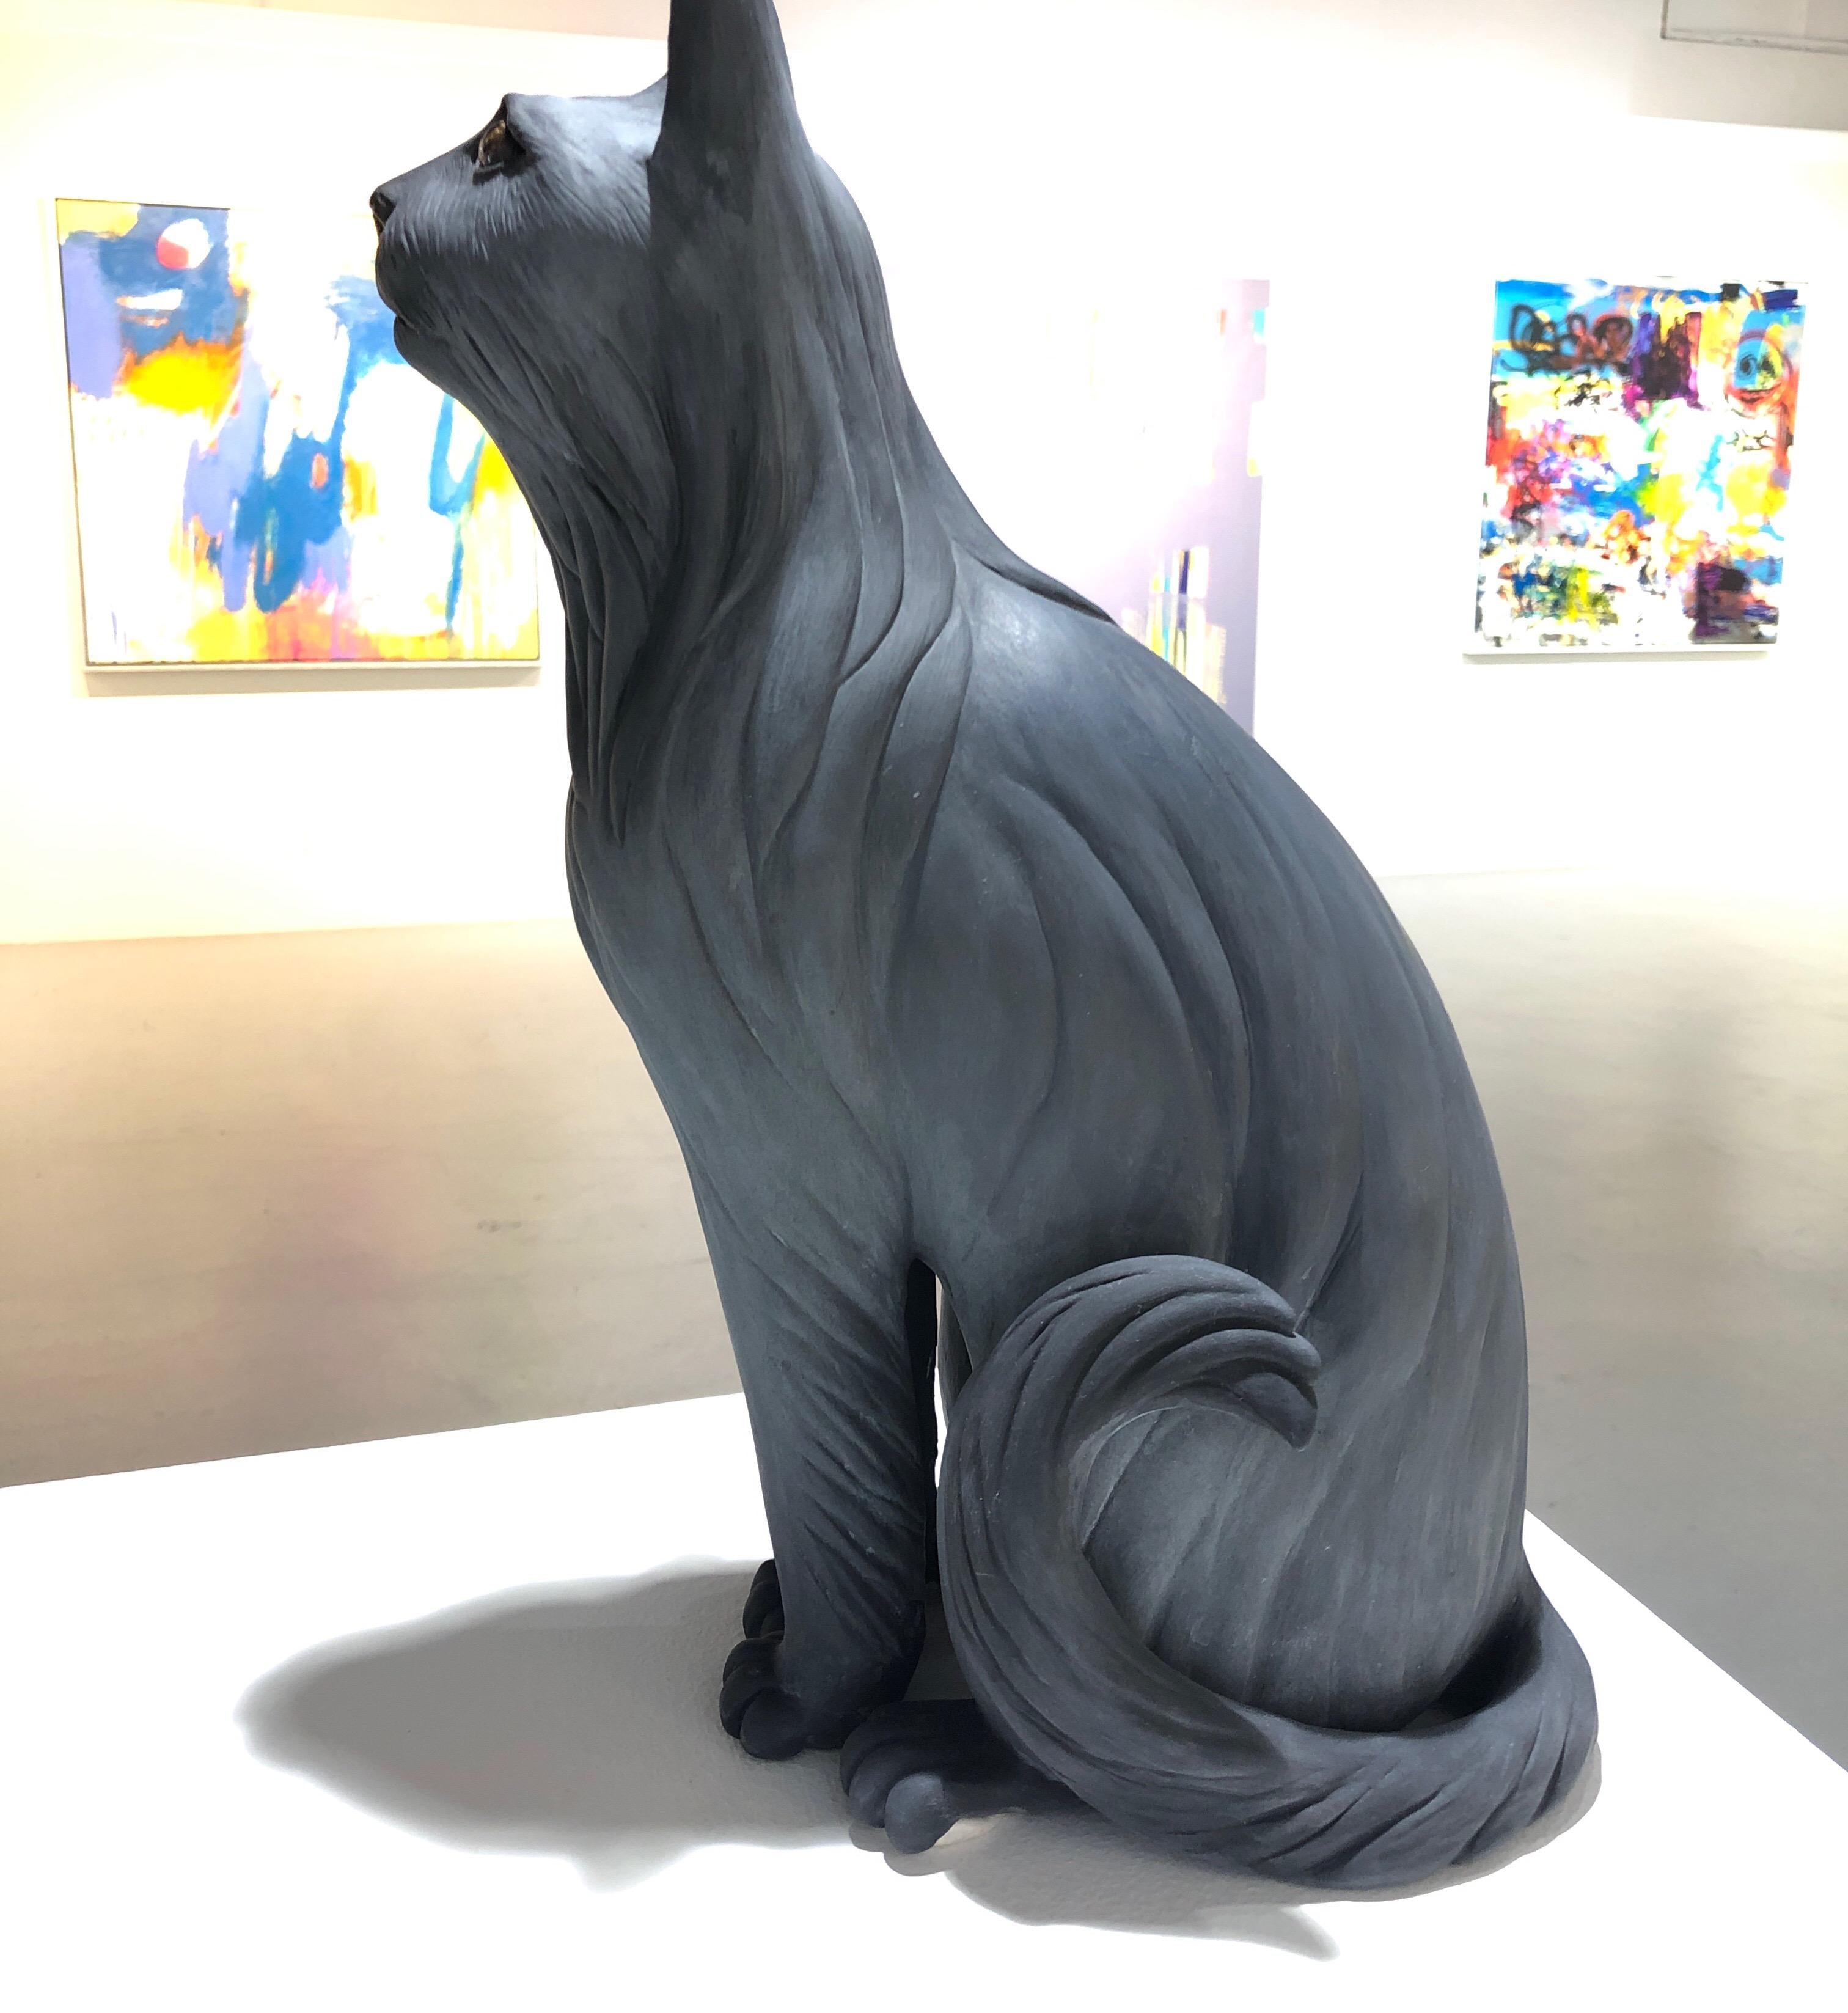 Ceramic Sculpture Titled: I Have a Cat 1